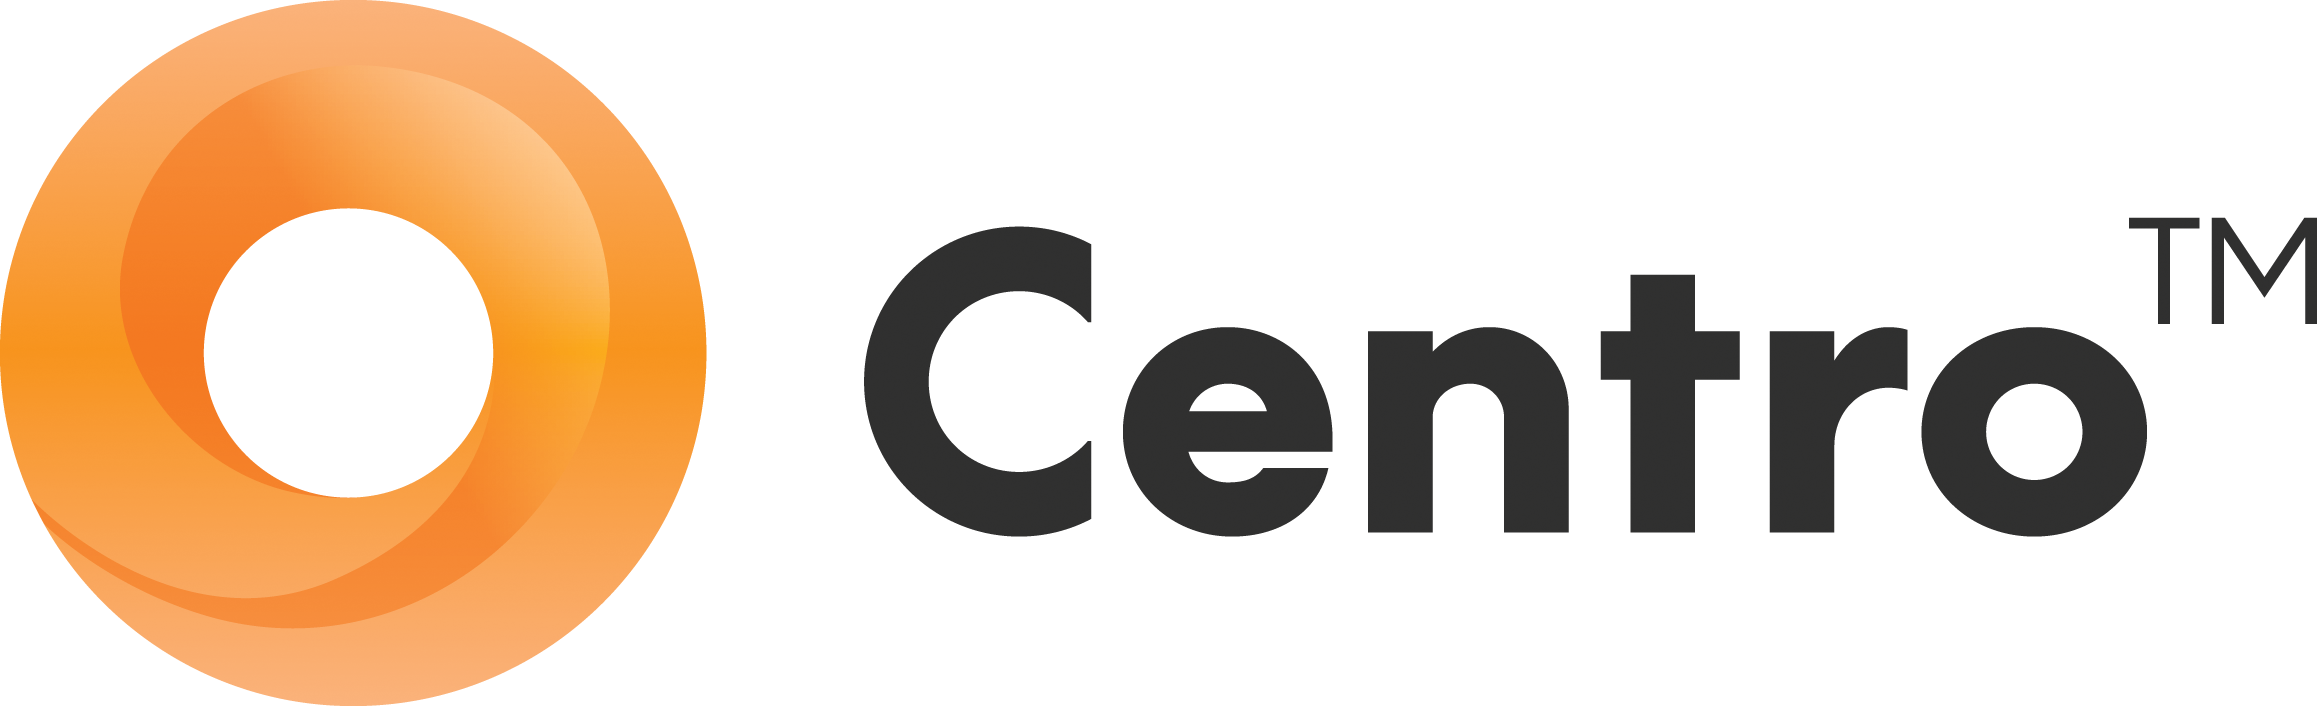  Centro  Logos 